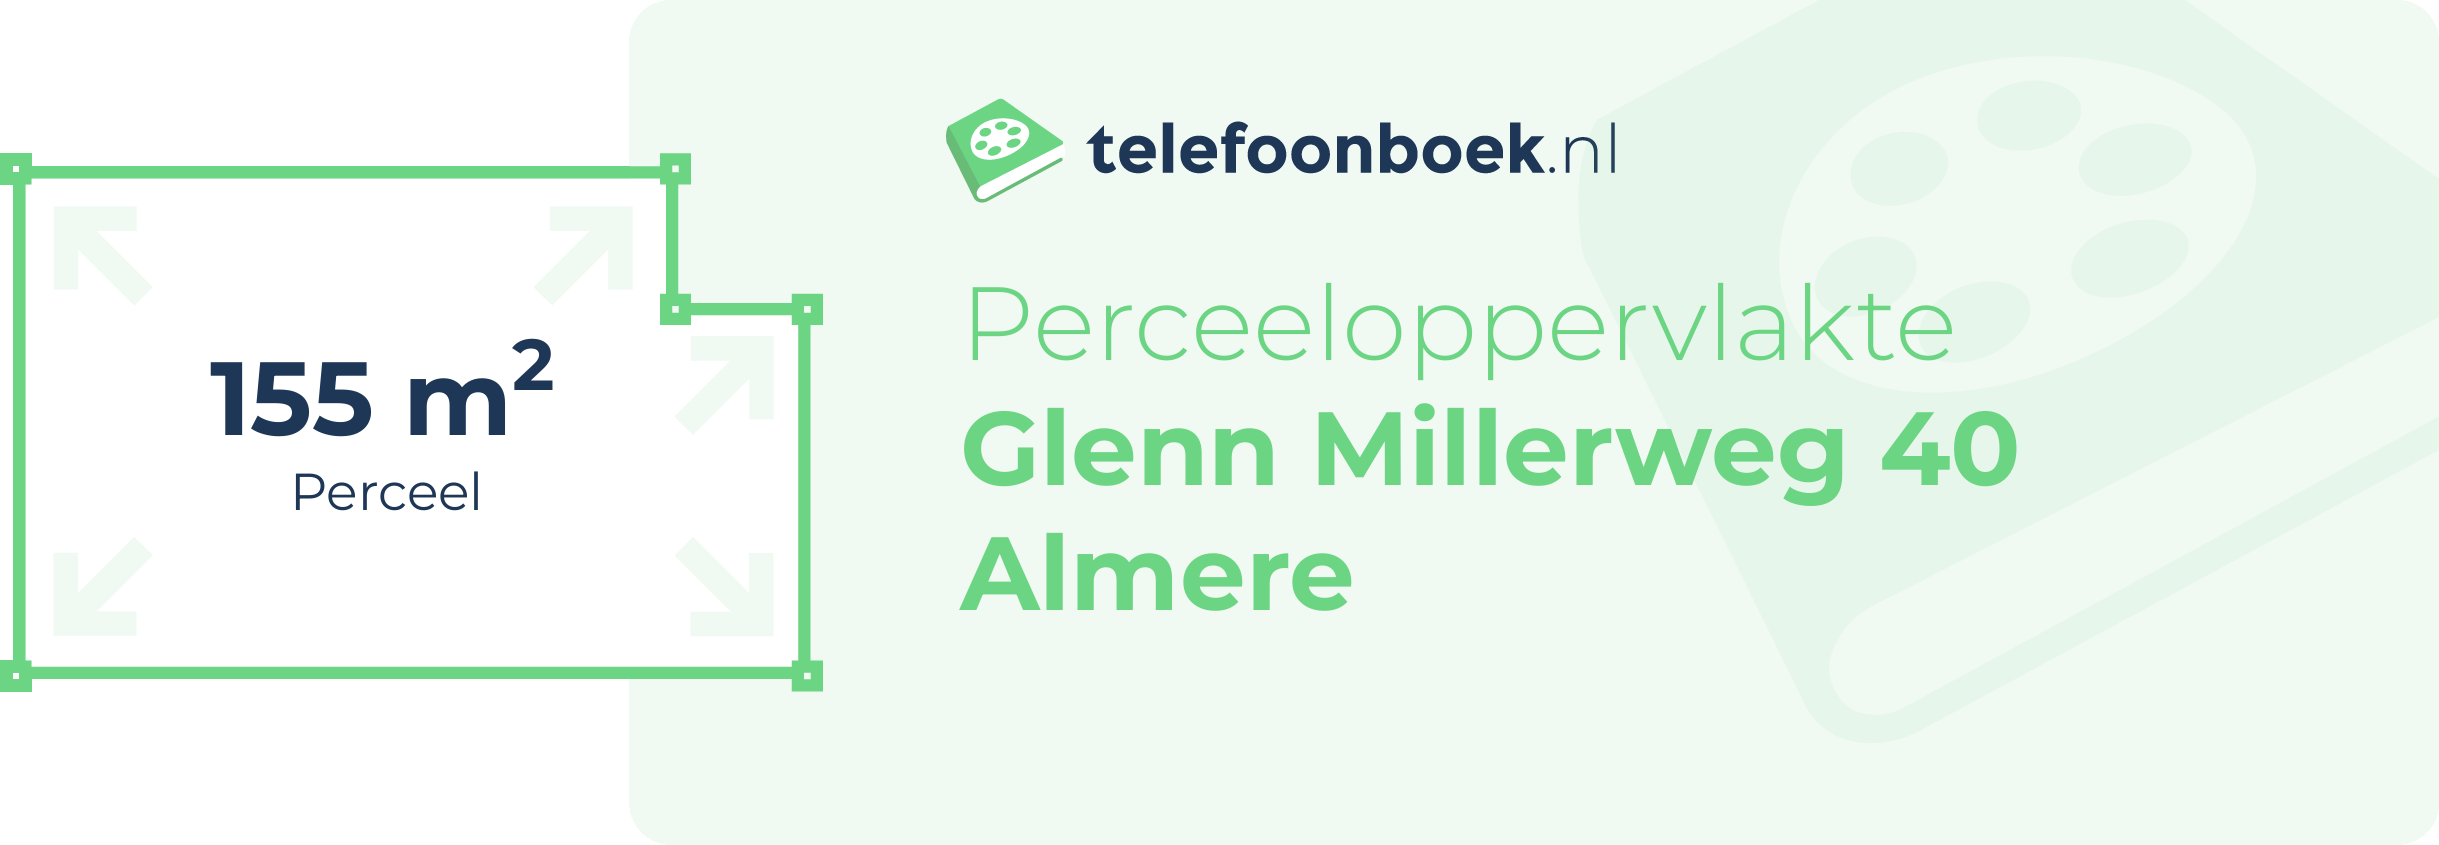 Perceeloppervlakte Glenn Millerweg 40 Almere